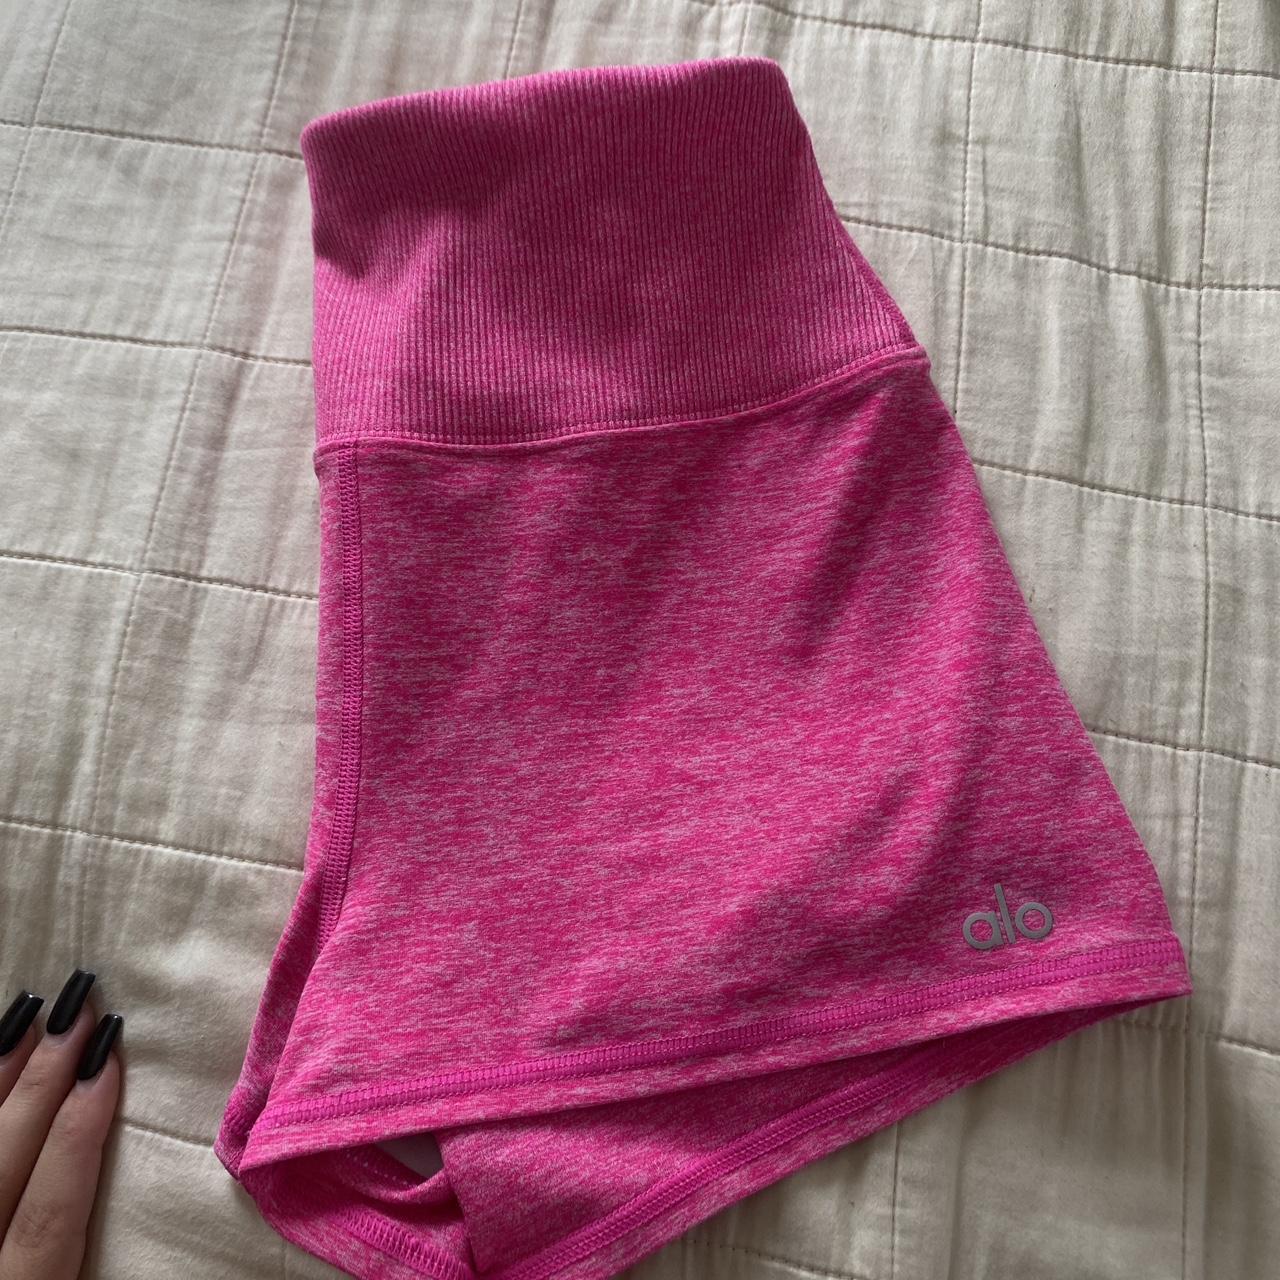 alo pink shorts 🩷🩷 -super cute worn like twice... - Depop